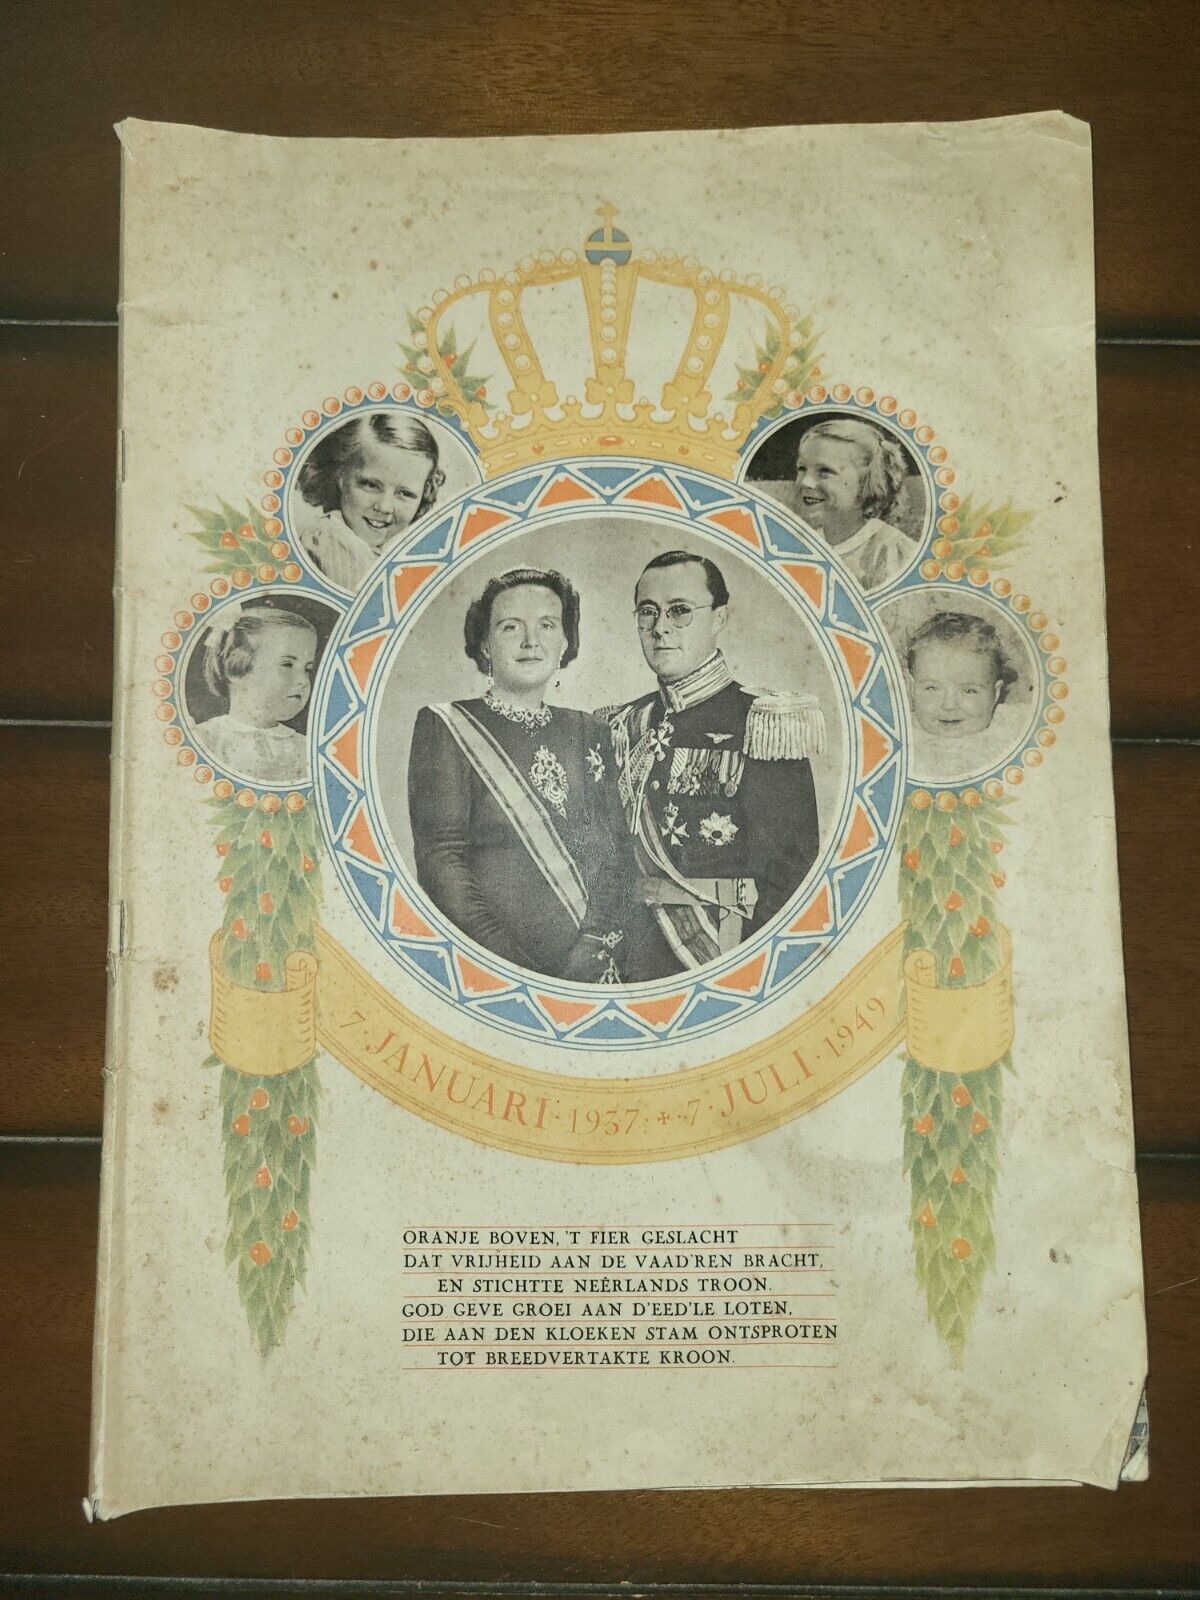 Queen Juliana Pnc Bernhard Royal Wedding Anniv Photo Book Netherlands 1937-1949 